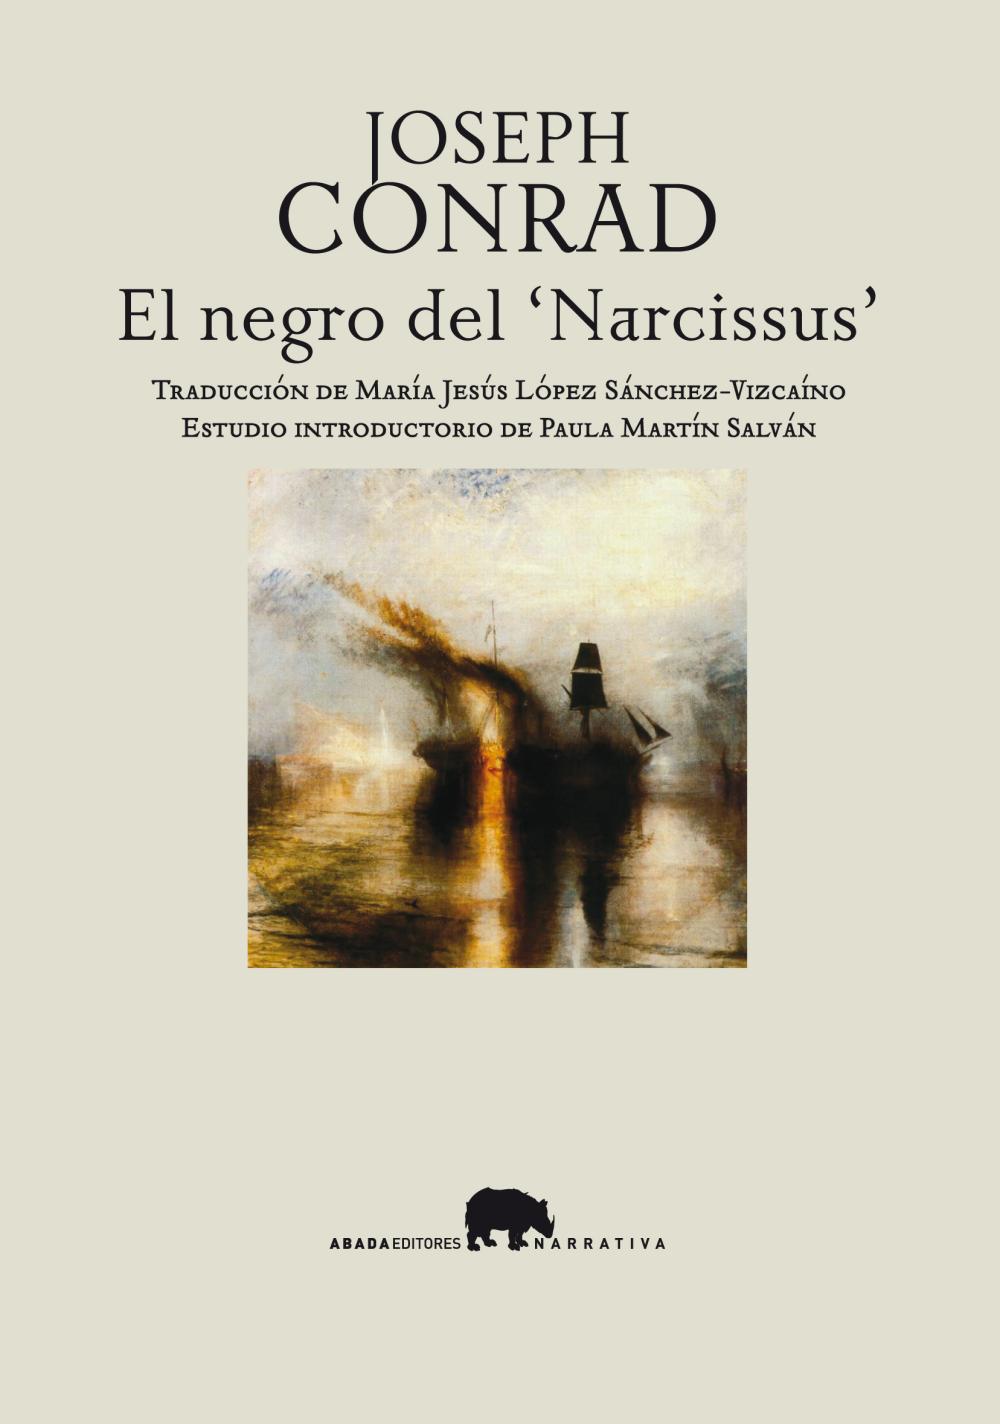 El negro del "Narcissus"